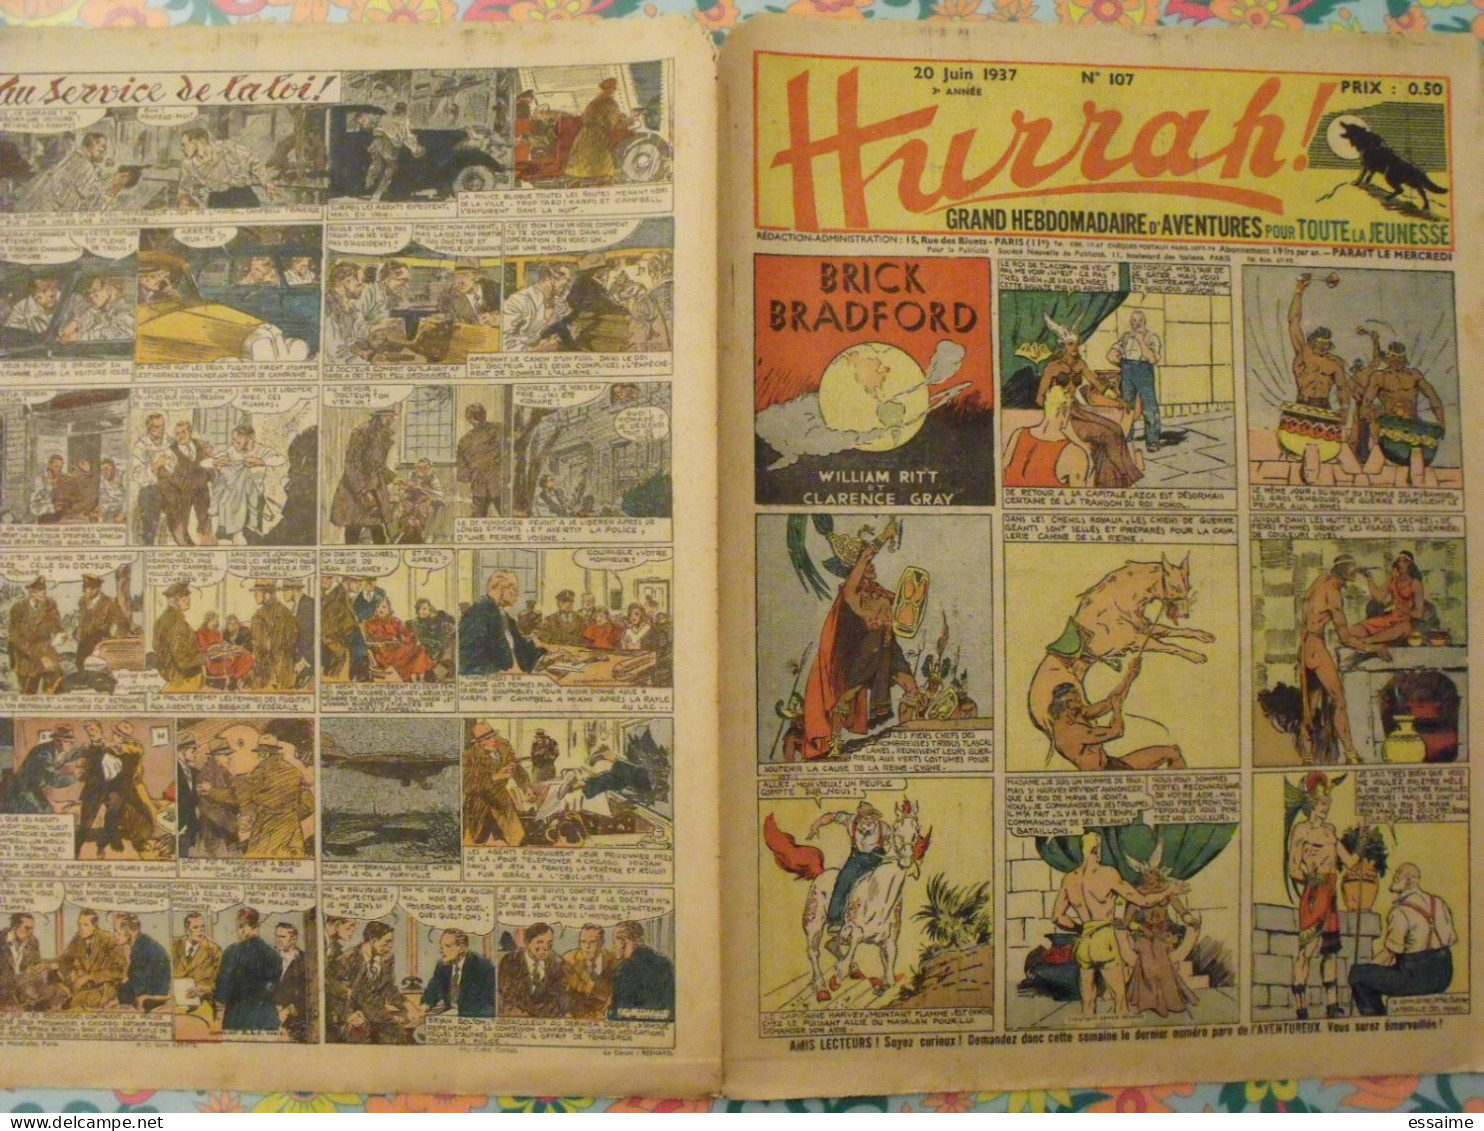 5 n° de Hurrah ! de 1937. Brick Bradford, dick l'intrépide, le roi de la police montée, gordon. A redécouvrir